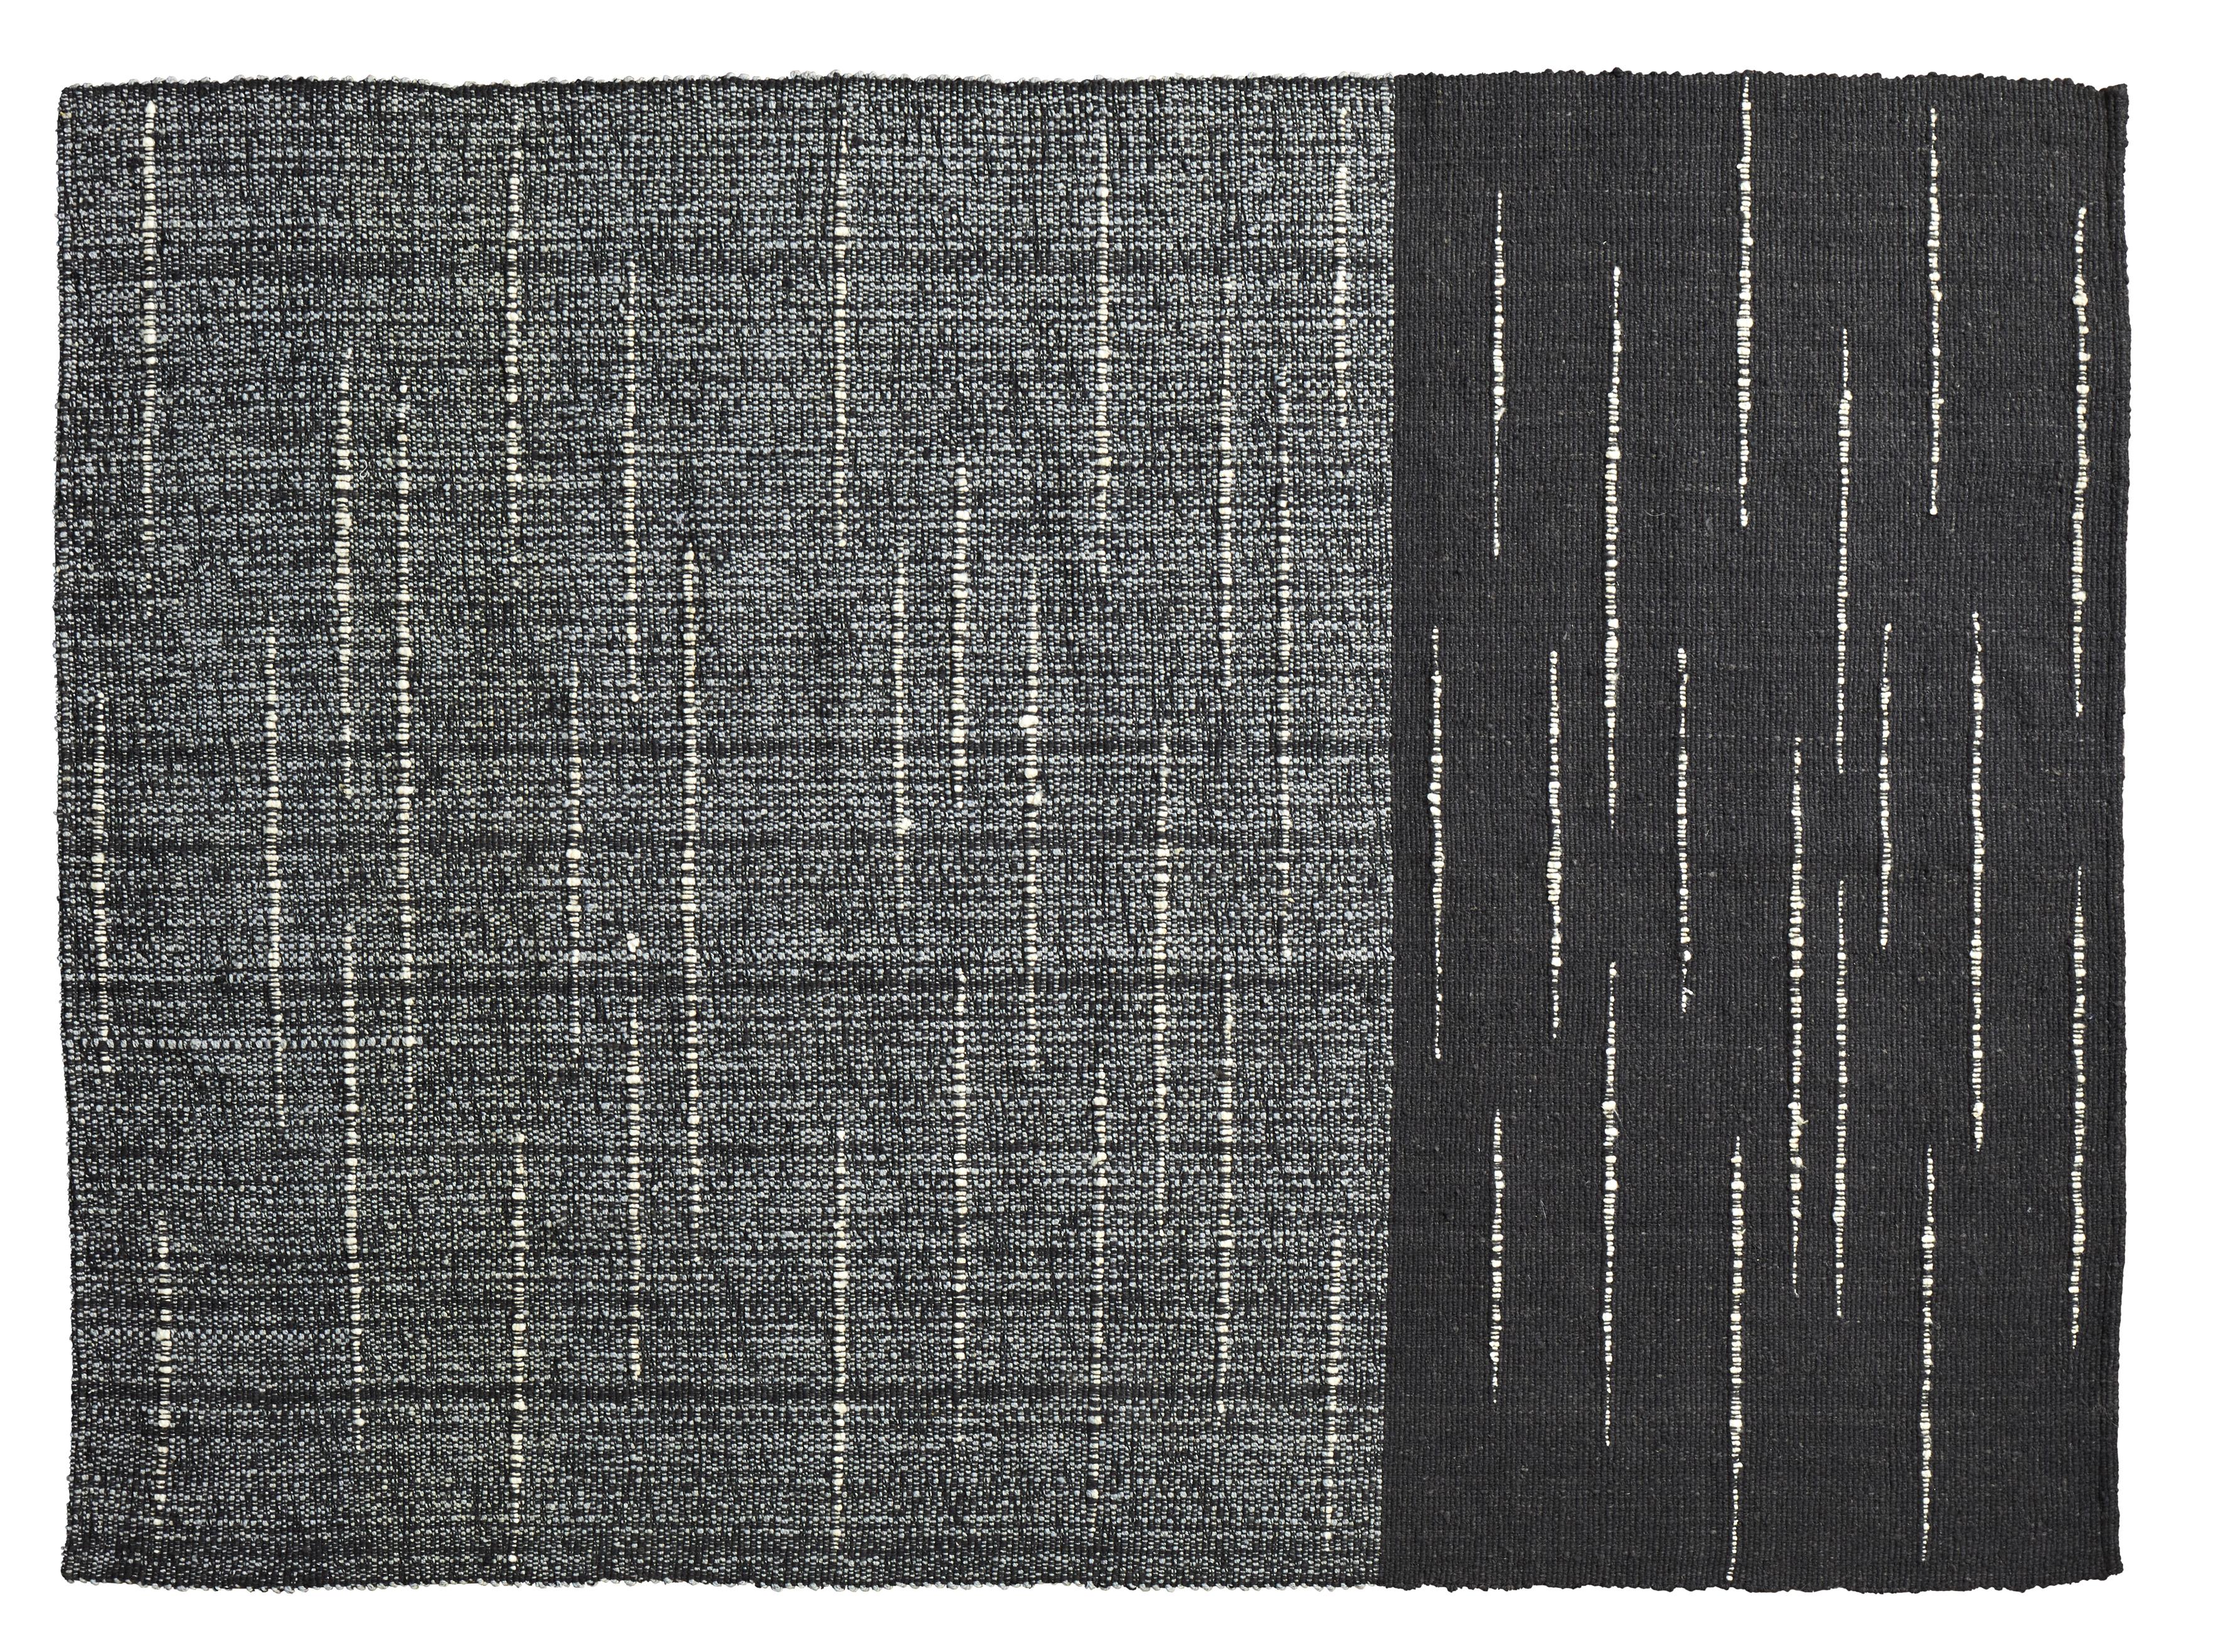 Petit tapis Oruga Subas de Sebastian Herkner
Matériaux : 100% laine vierge naturelle. 
Technique : Fibres teintes naturellement. Tissé à la main en Colombie.
Dimensions : L 160 x L 220 cm 
Disponible dans les couleurs : karo, linea 1, linea 2,